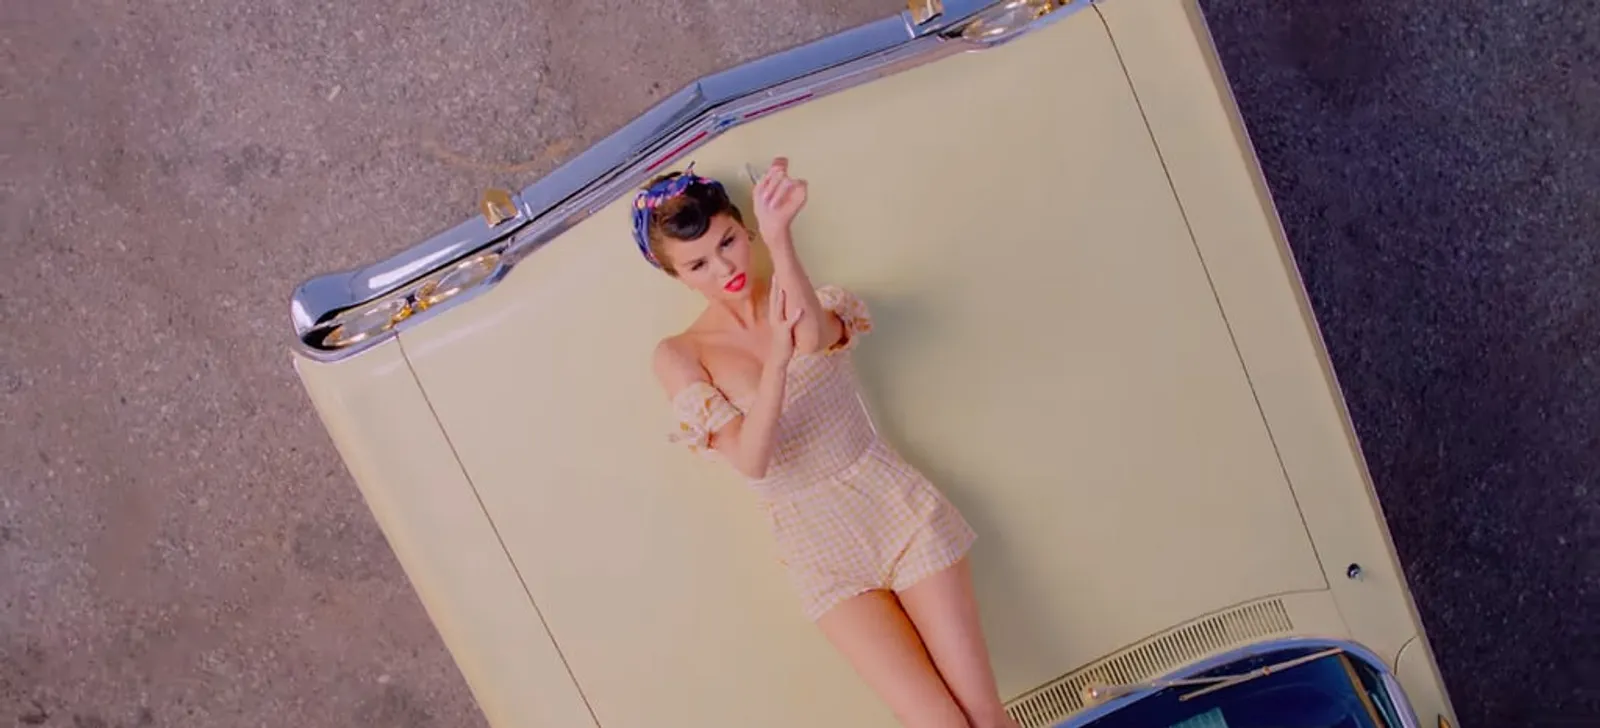 Gaya Gemas BLACKPINK & Selena Gomez di Video Klip 'Ice Cream'